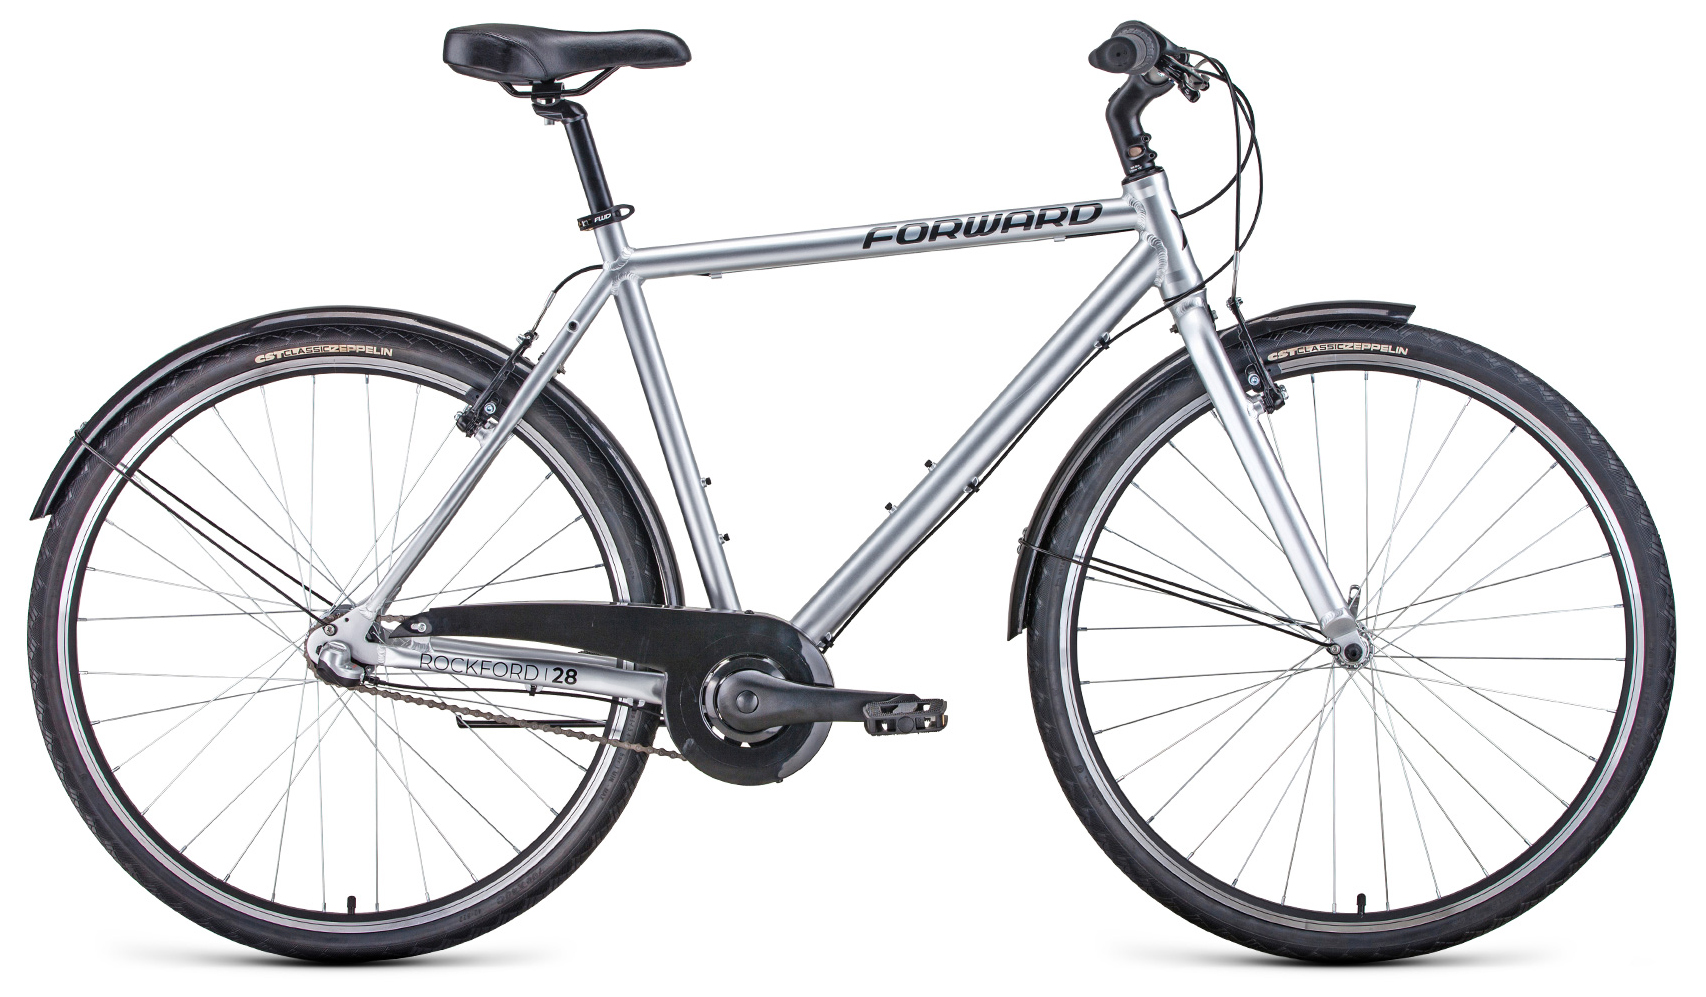  Отзывы о Городском велосипеде Forward Rockford 28 (2021) 2021